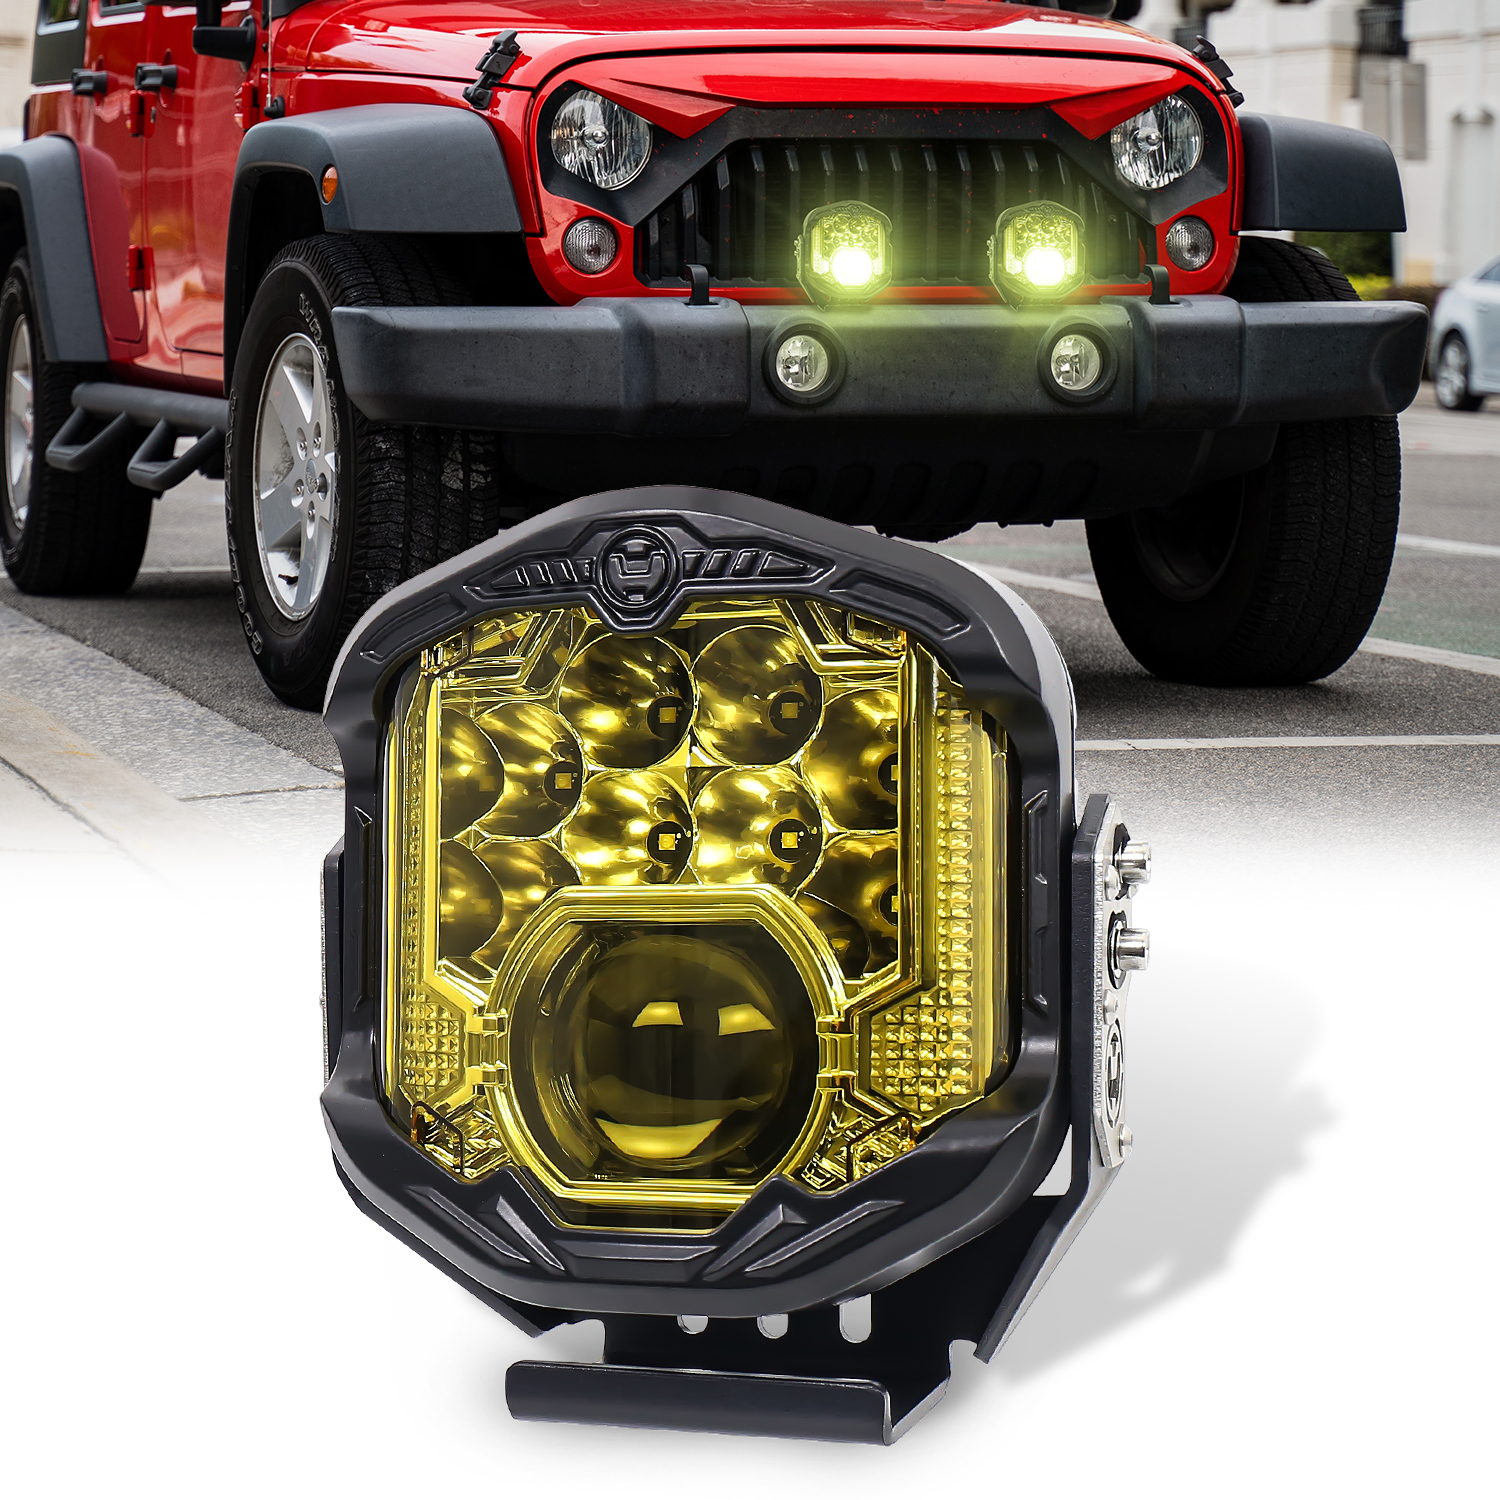 7 inch LED Driving Light, 95W LED Off Road Light with Laser Light 10800LM Yellow Fog Light for Pickup Truck 4x4 UTV ATV SUV, Pack of 1